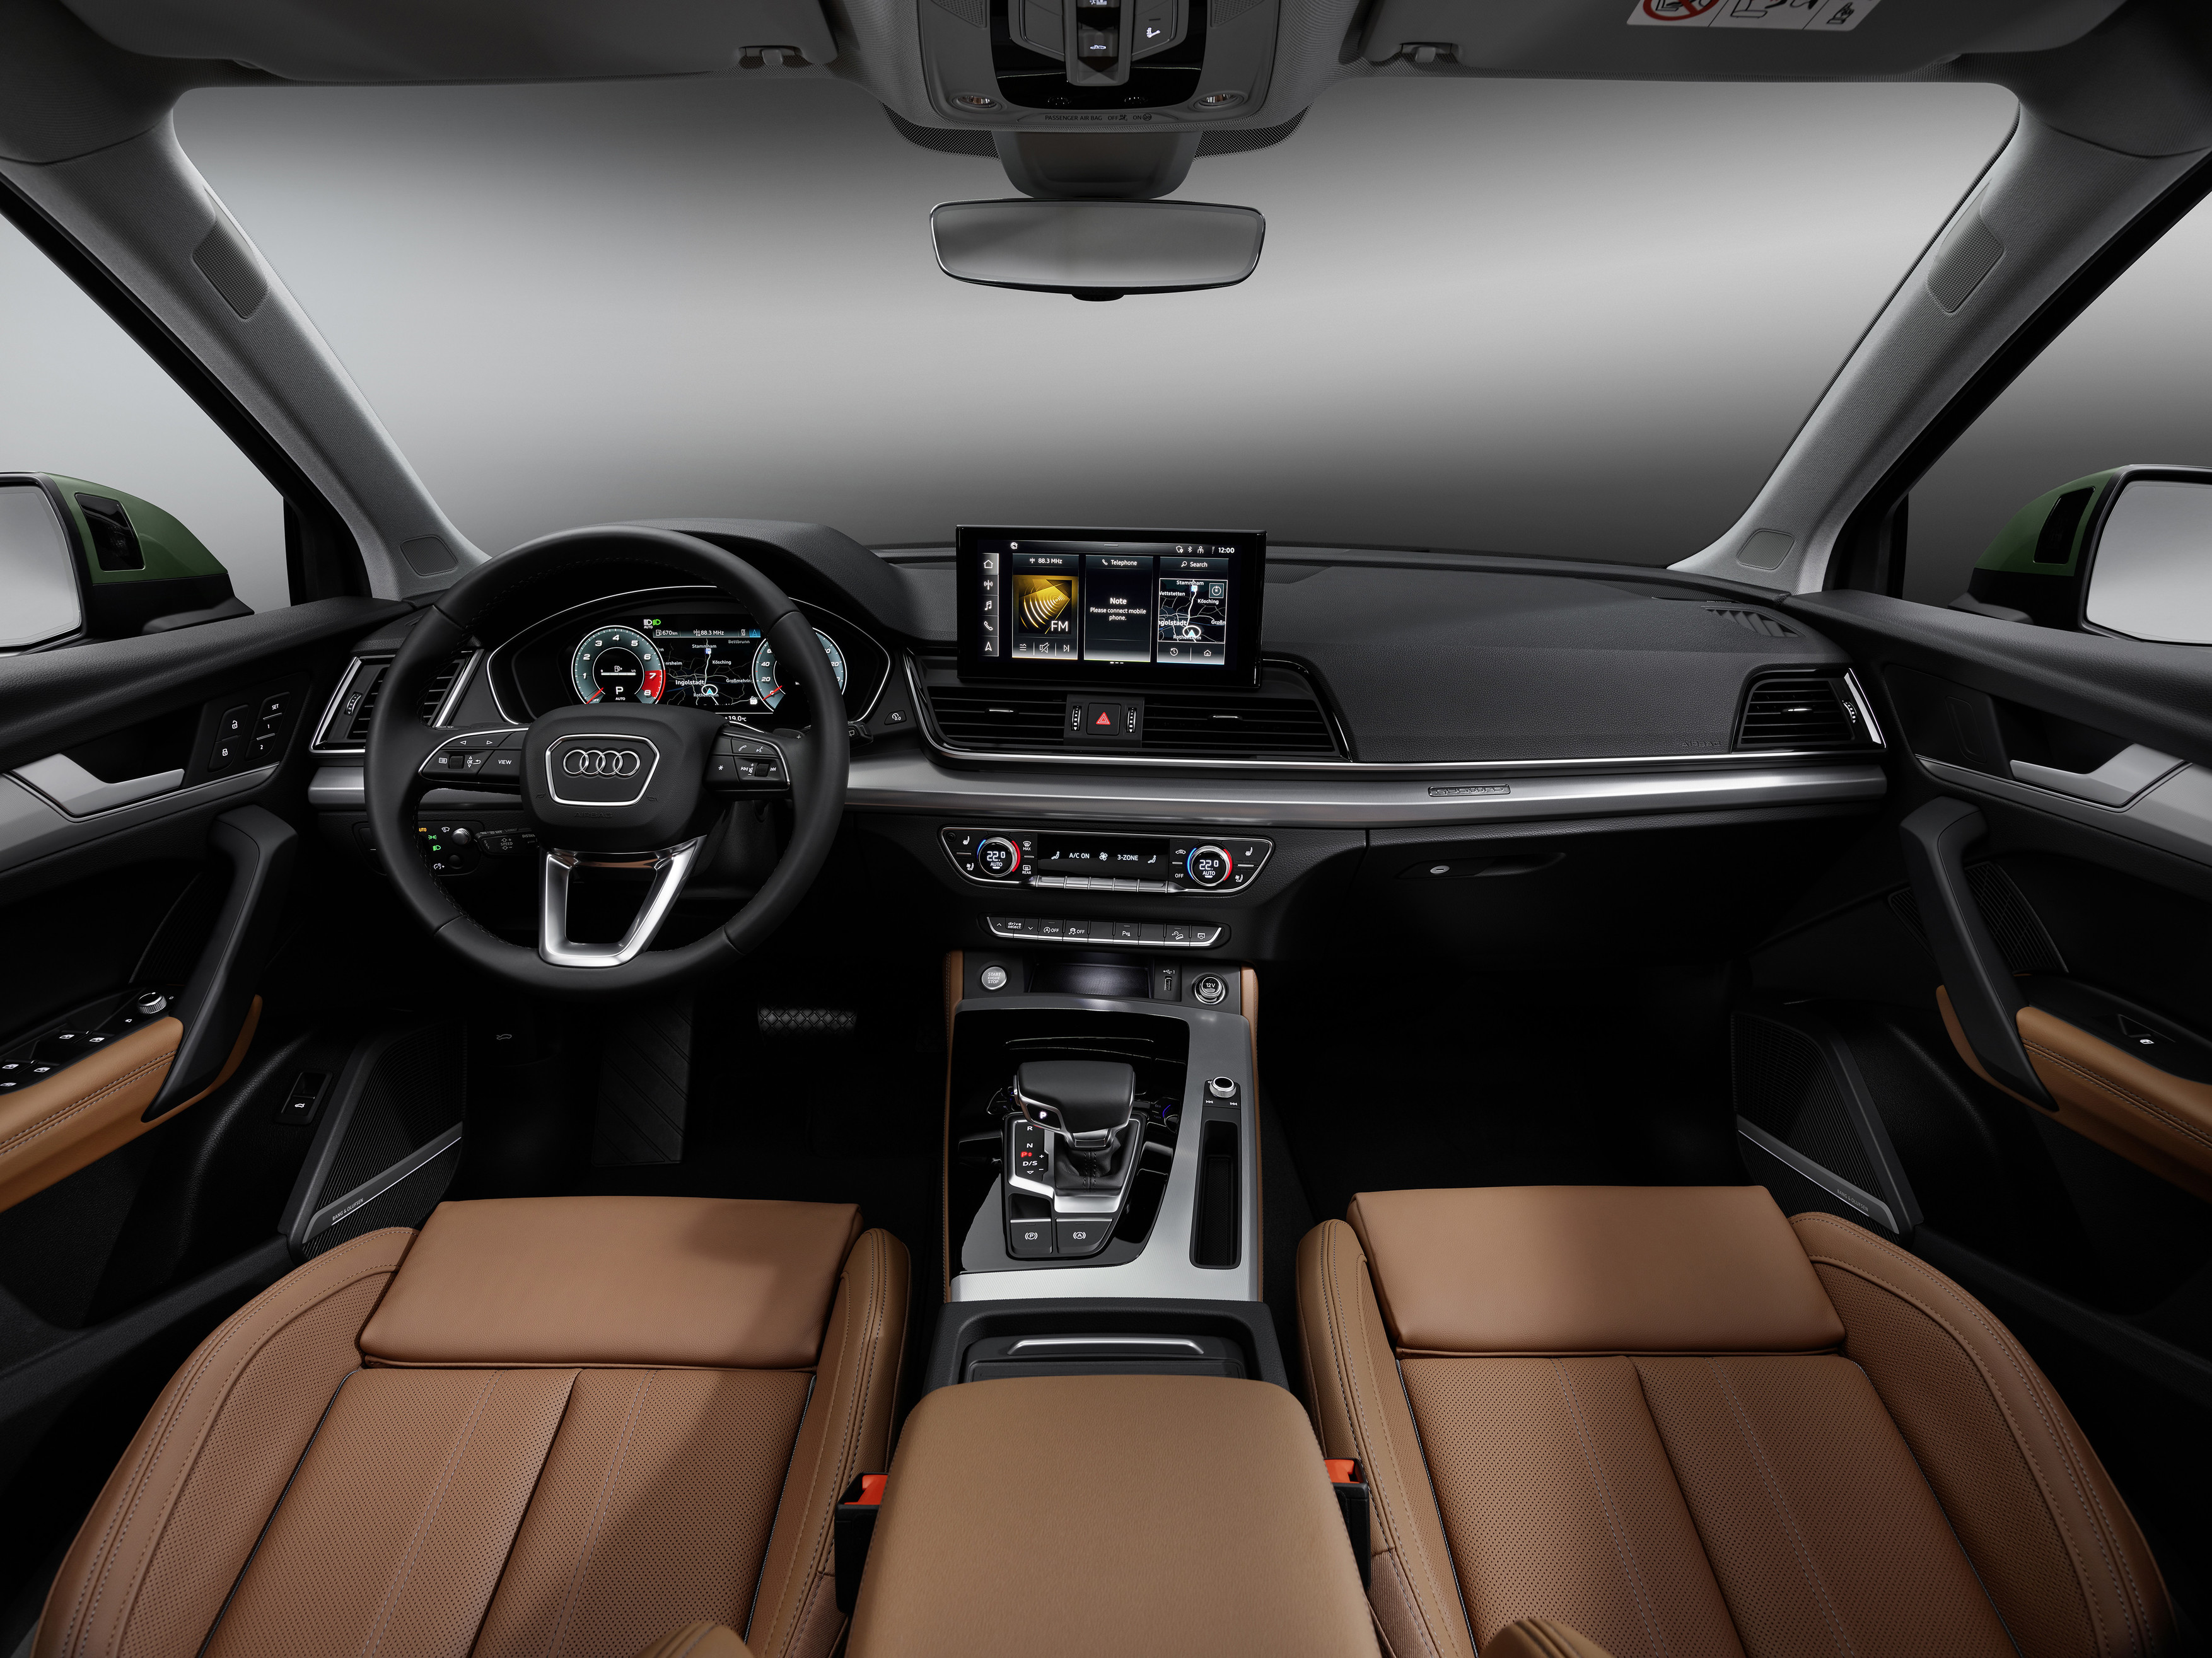 2023 Audi Q5 interior in brown